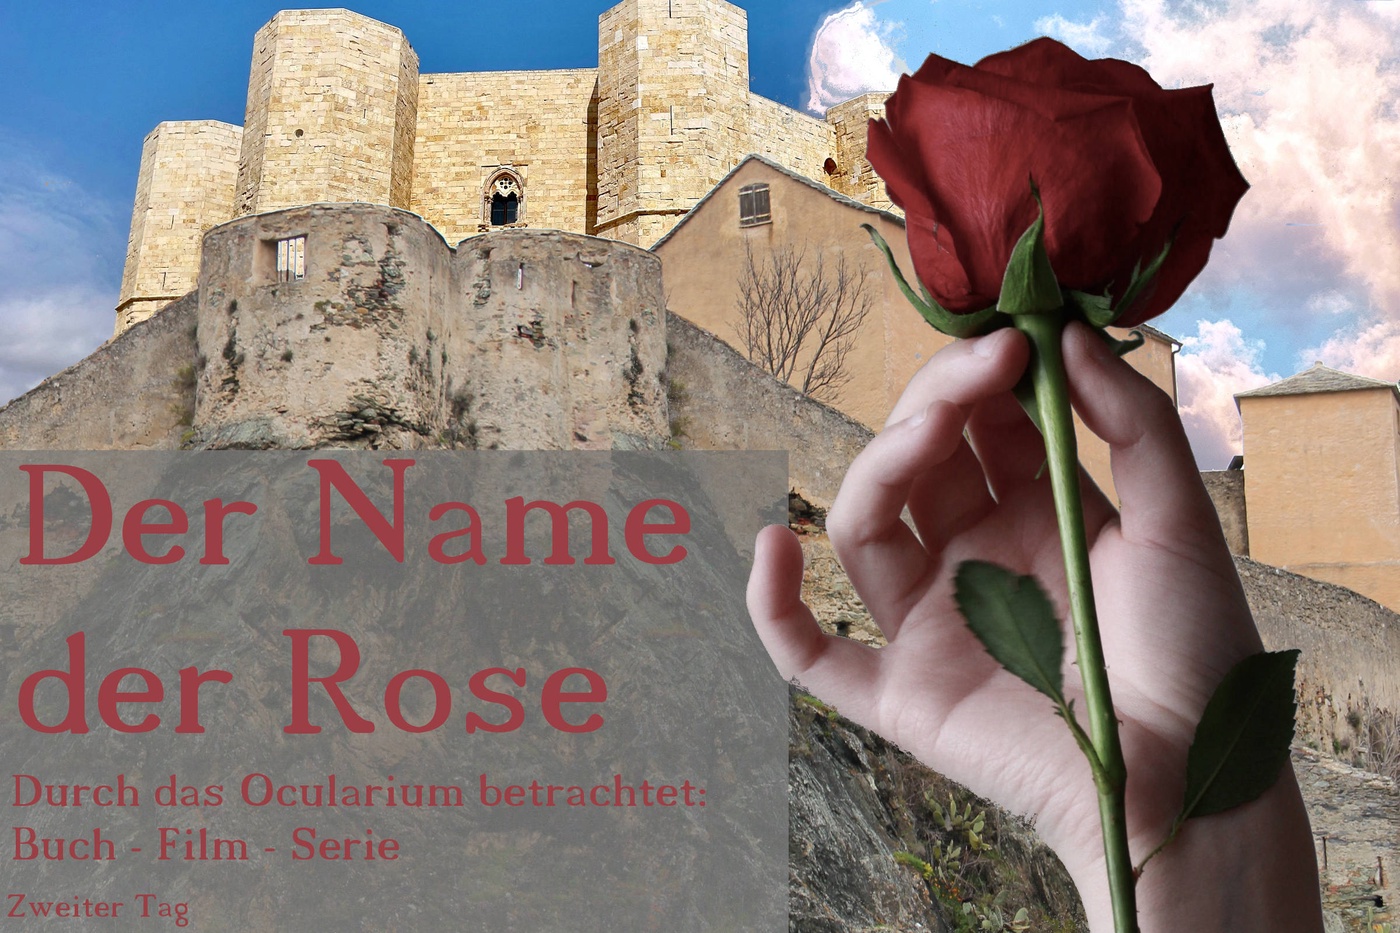 Der Name der Rose - Durch das Ocularium betrachtet: Buch - Film - Serie (4)